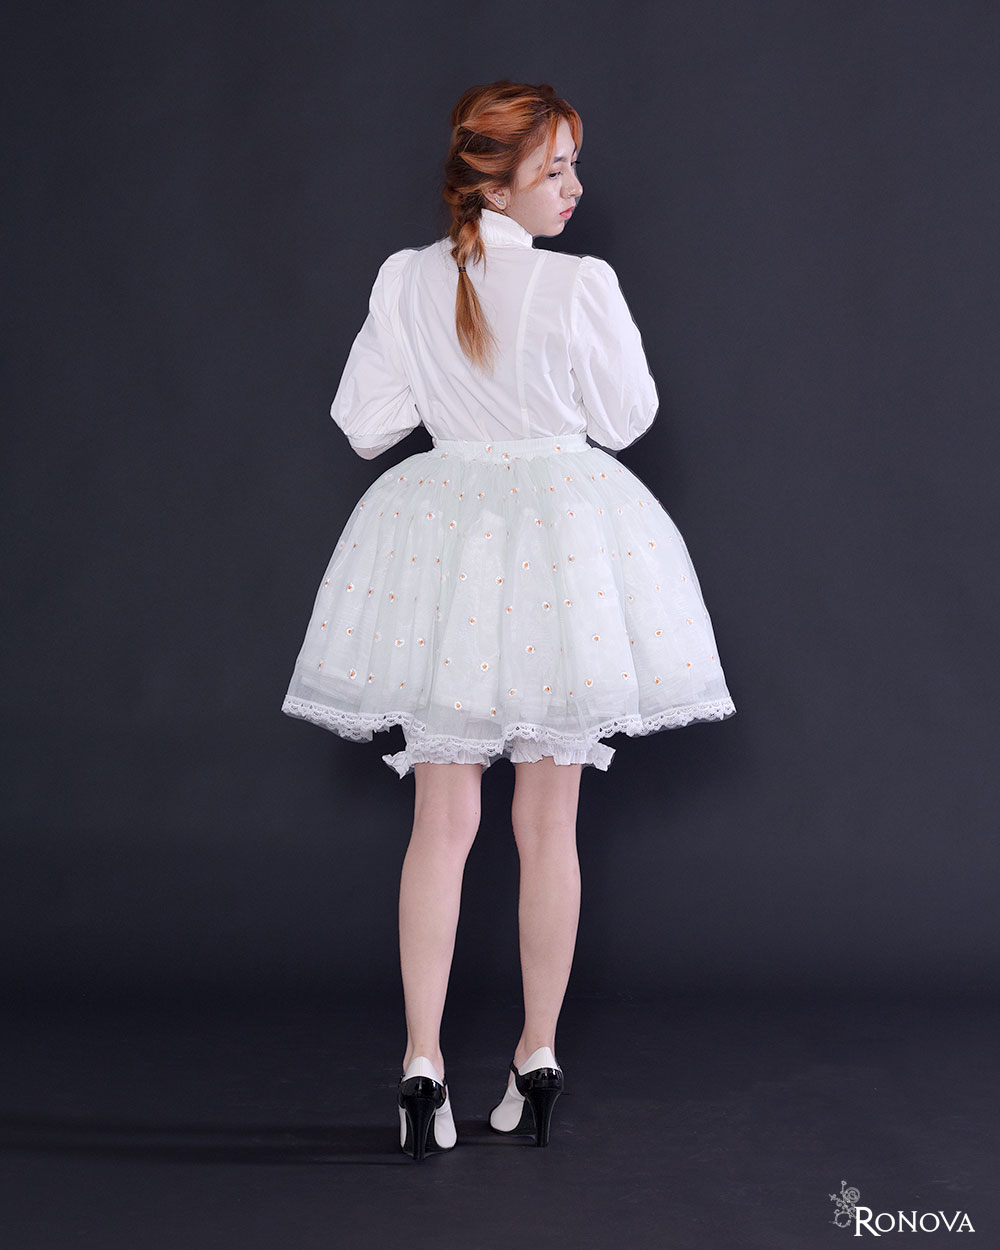 Ronova Petticoat Skirt with Daisy on Ice Mint Green